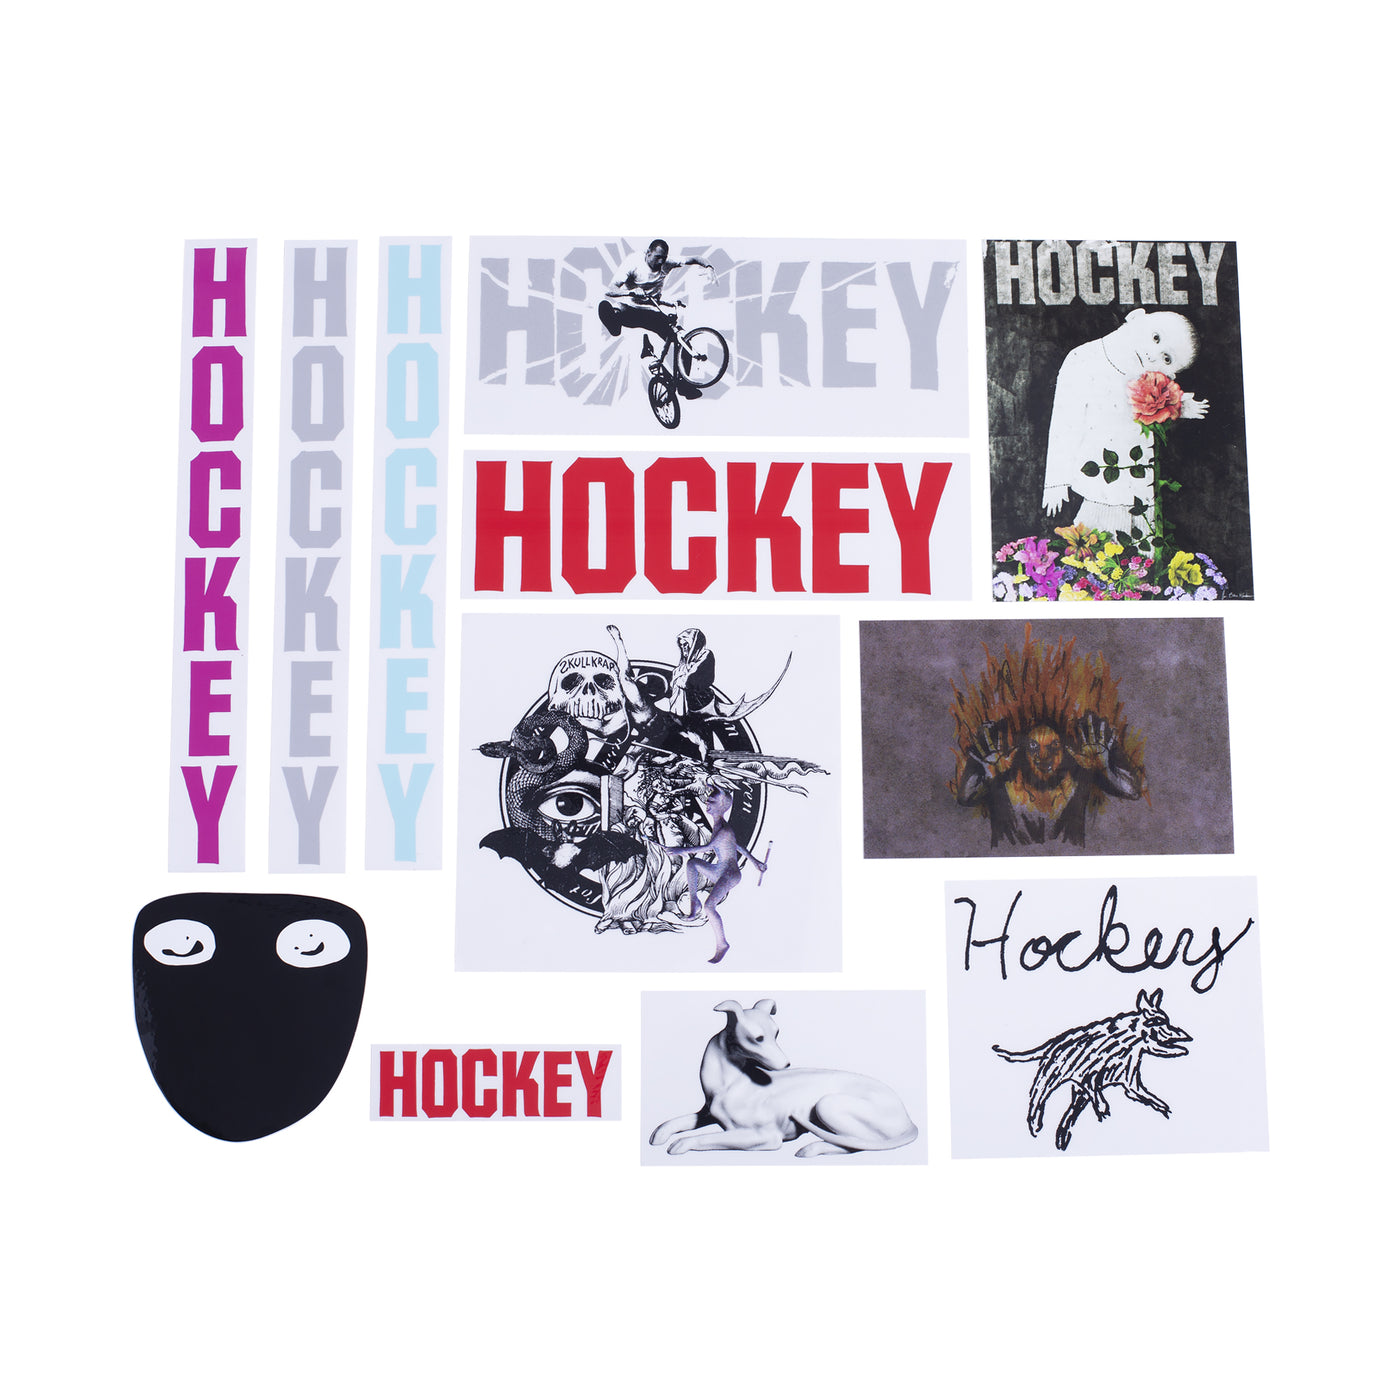 Hockey - Hockey Sticker Pack 2021 (10 unidades)